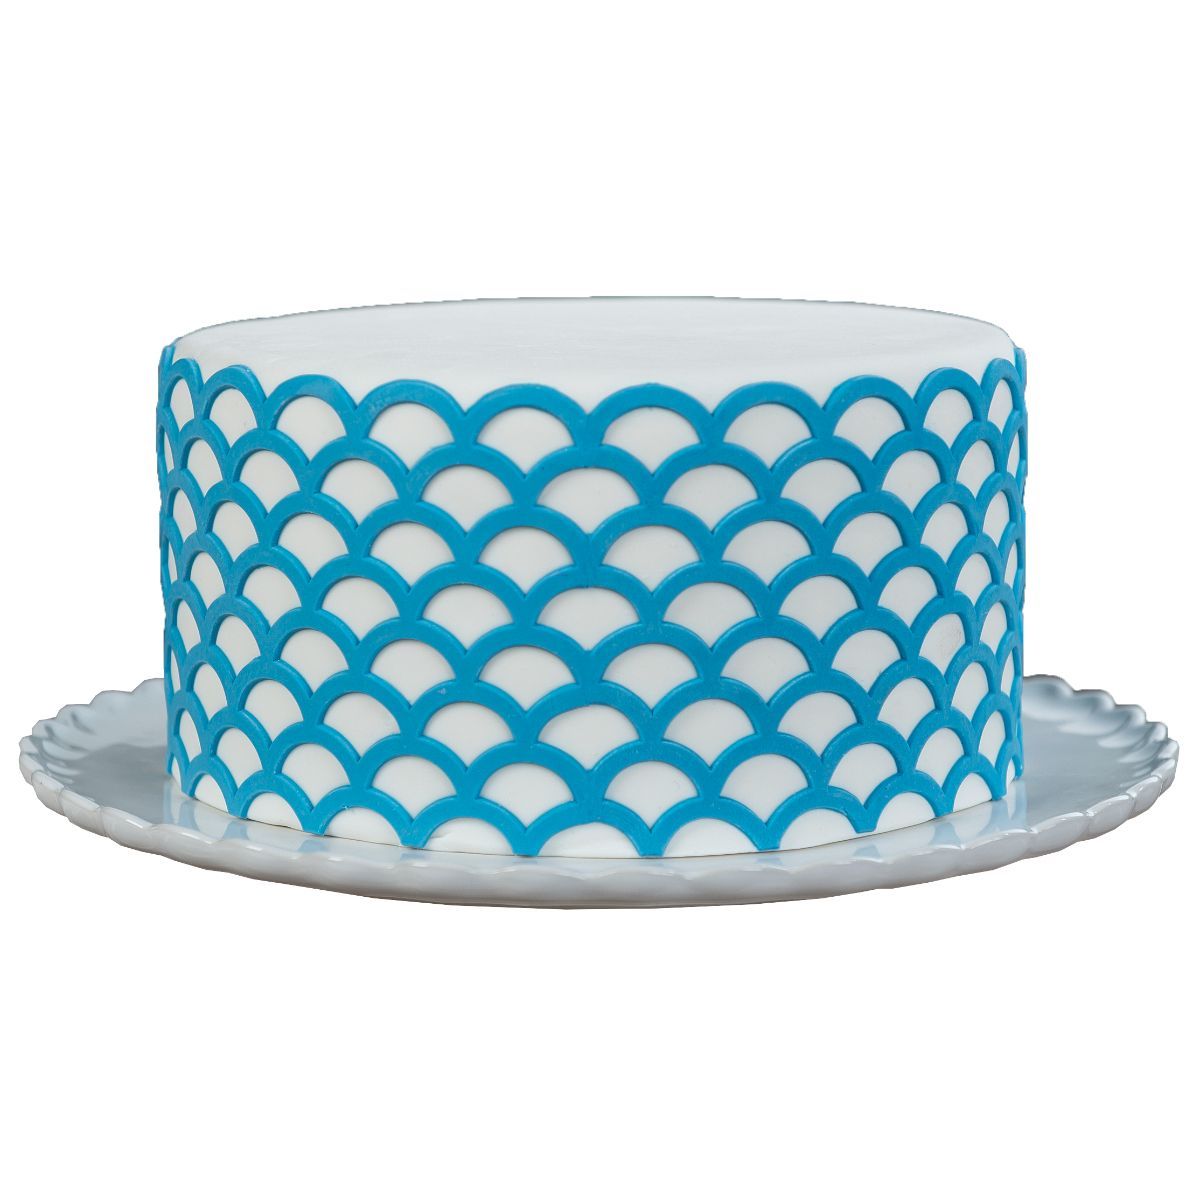 Scalloped Lattice Onlay® - Bake Supply Plus